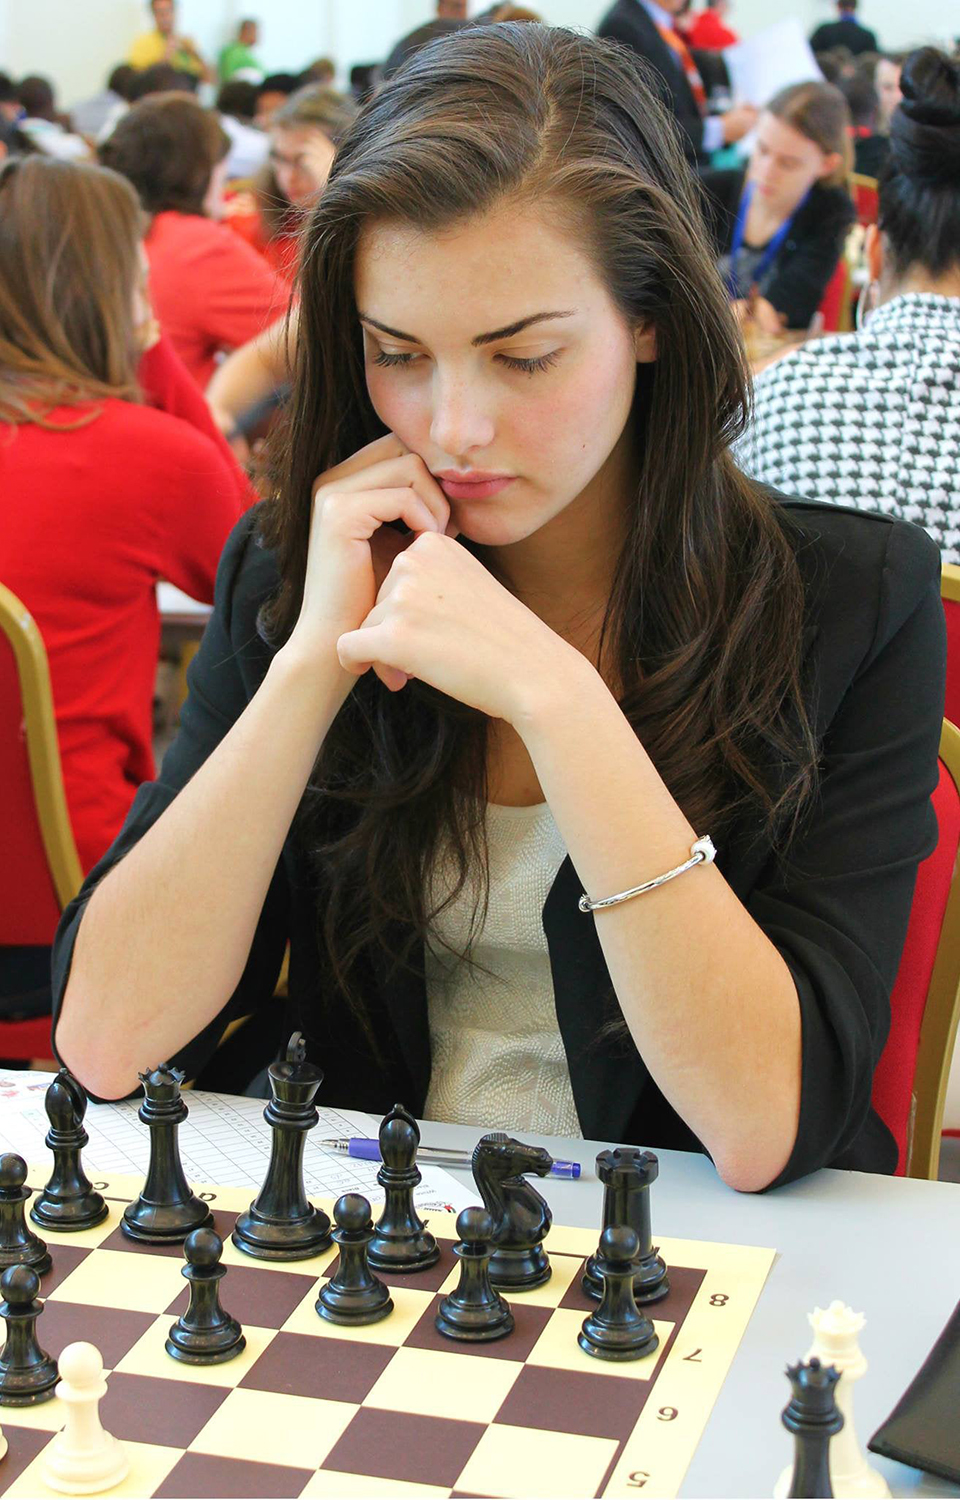 Como “Gambito de Dama” acertou em cheio no mundo do xadrez – NiT